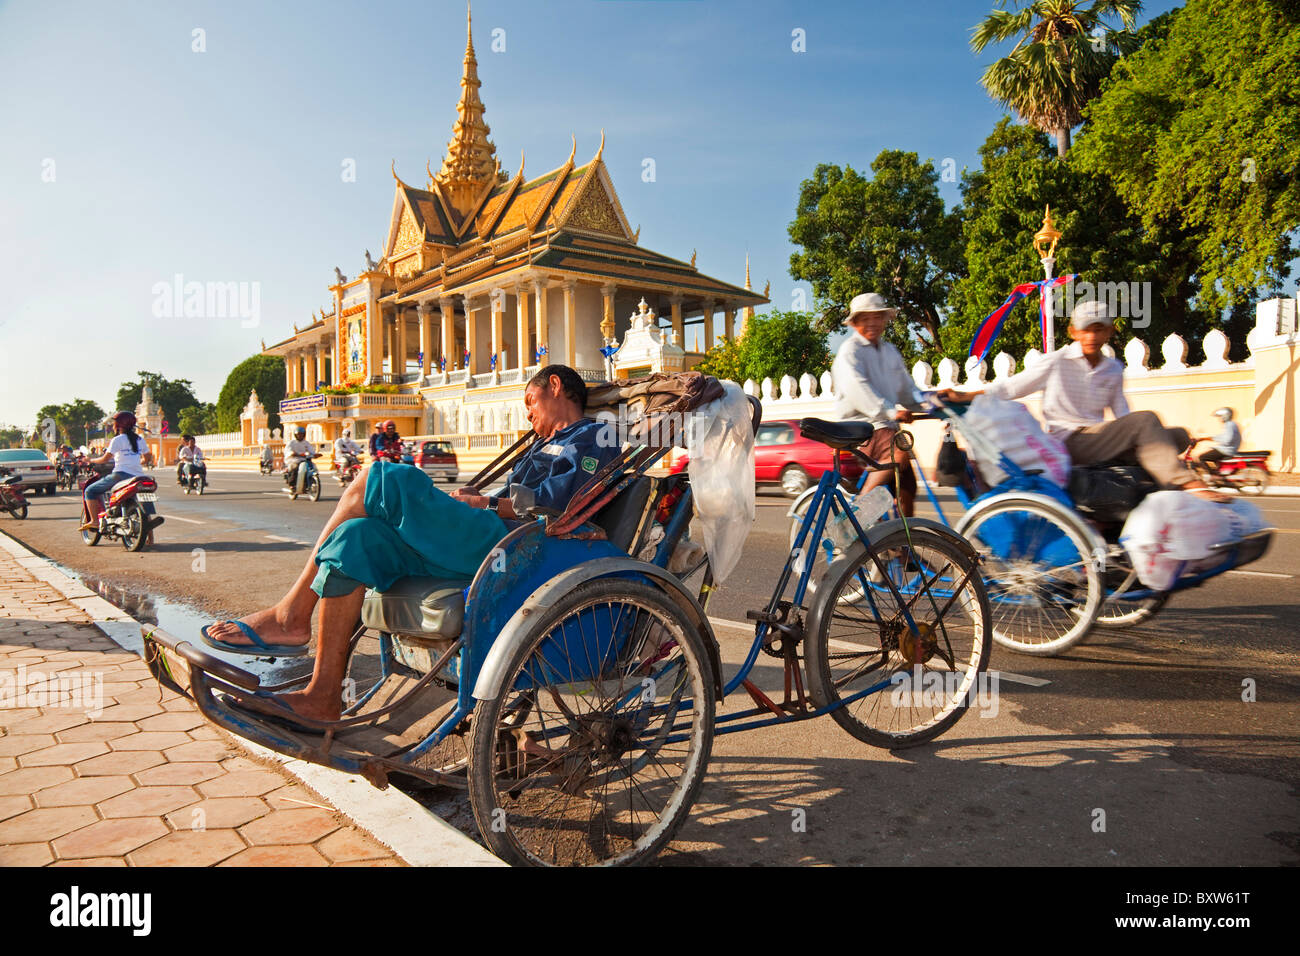 Cycle and traffic, Royal Palace, Phnom Penh, Cambodia Stock Photo